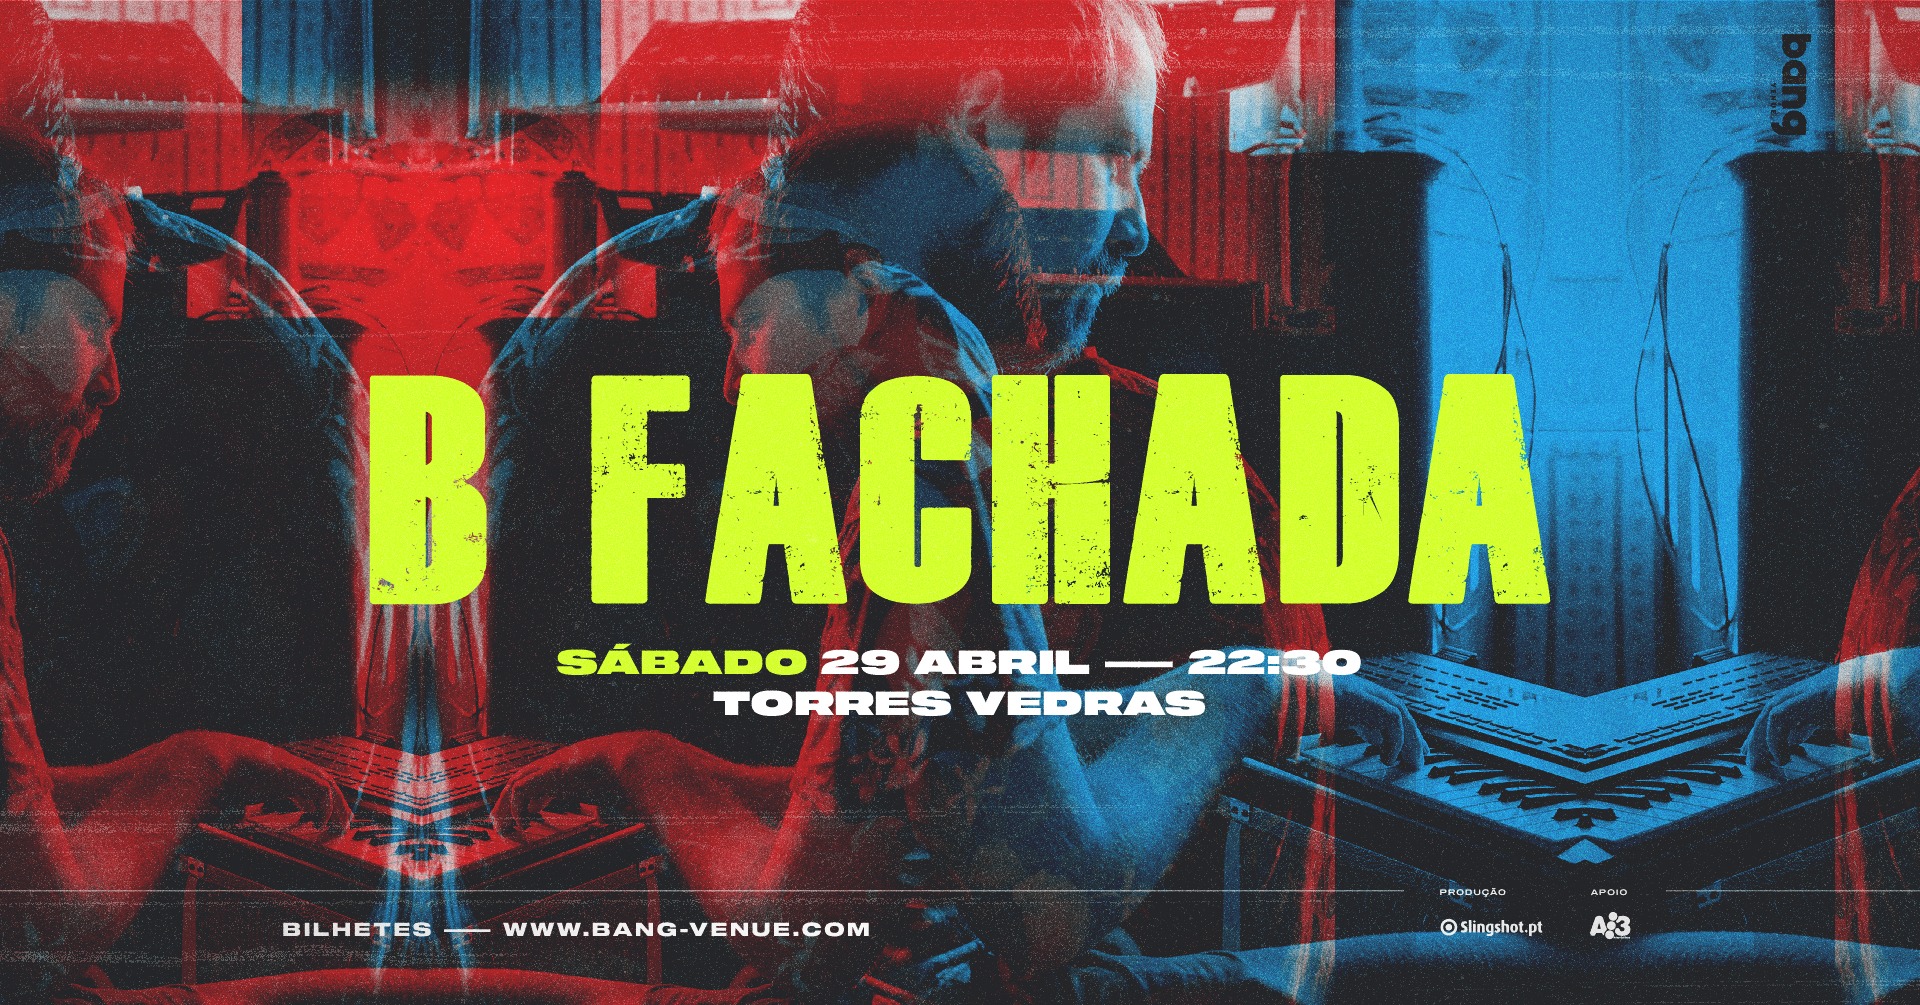 Concerto B Fachada | Torres Vedras | Bang Venue